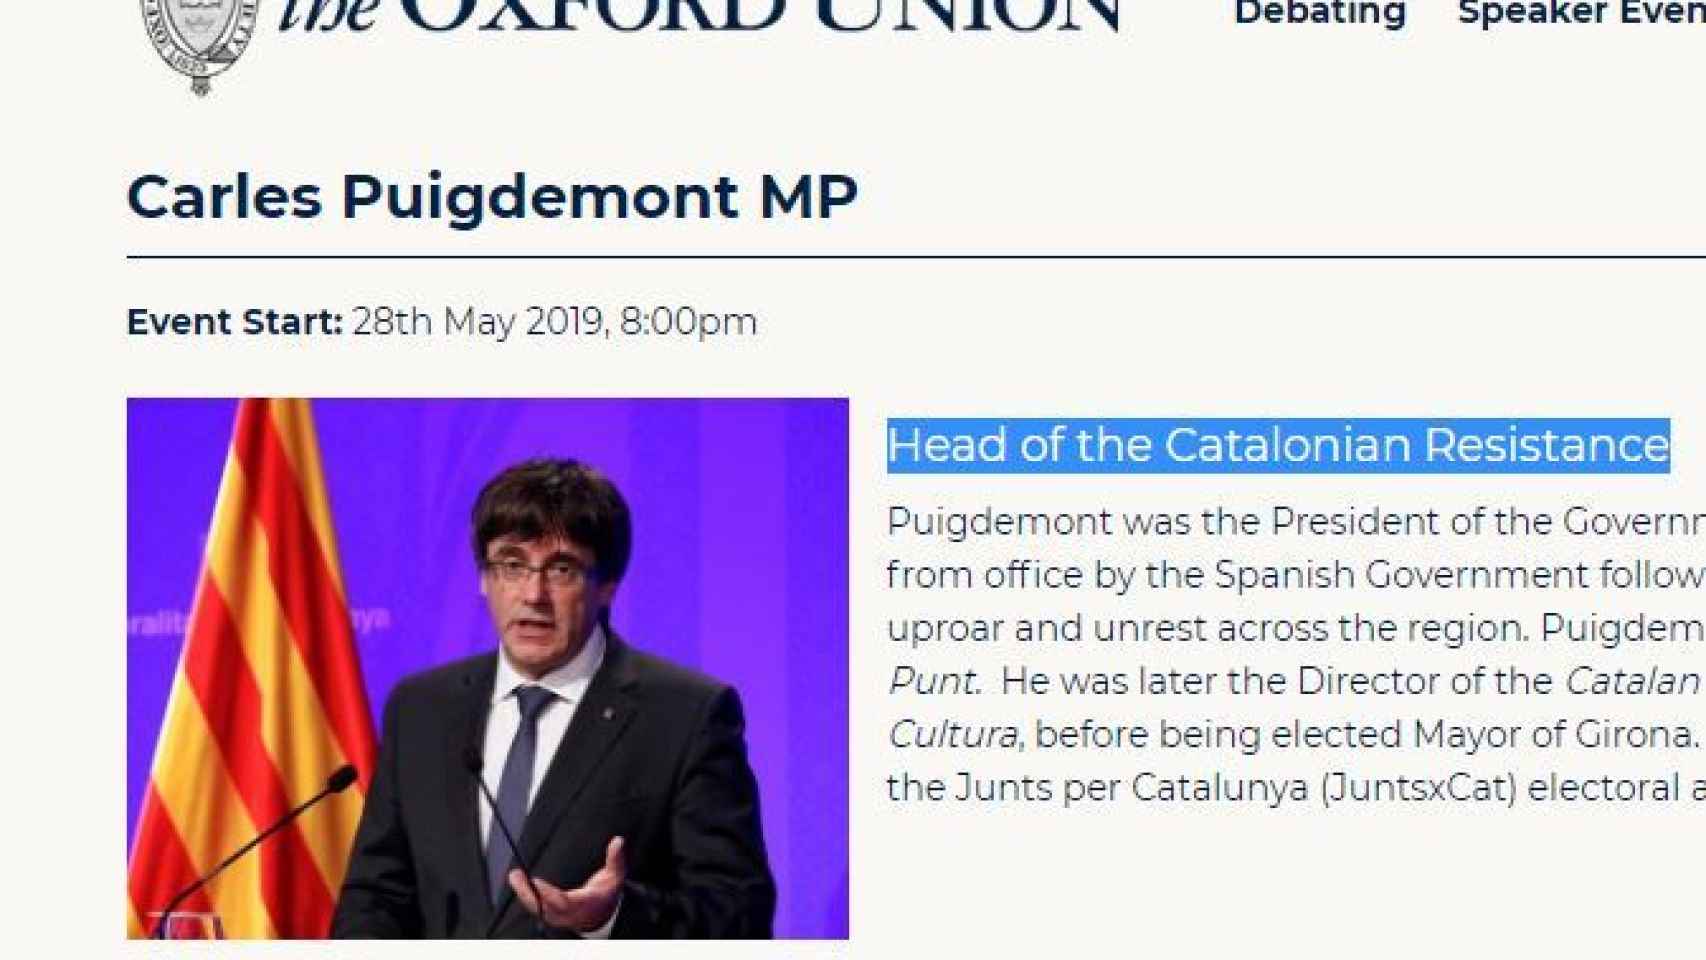 Anuncio del evento de Puigdemont en la Oxford Union./